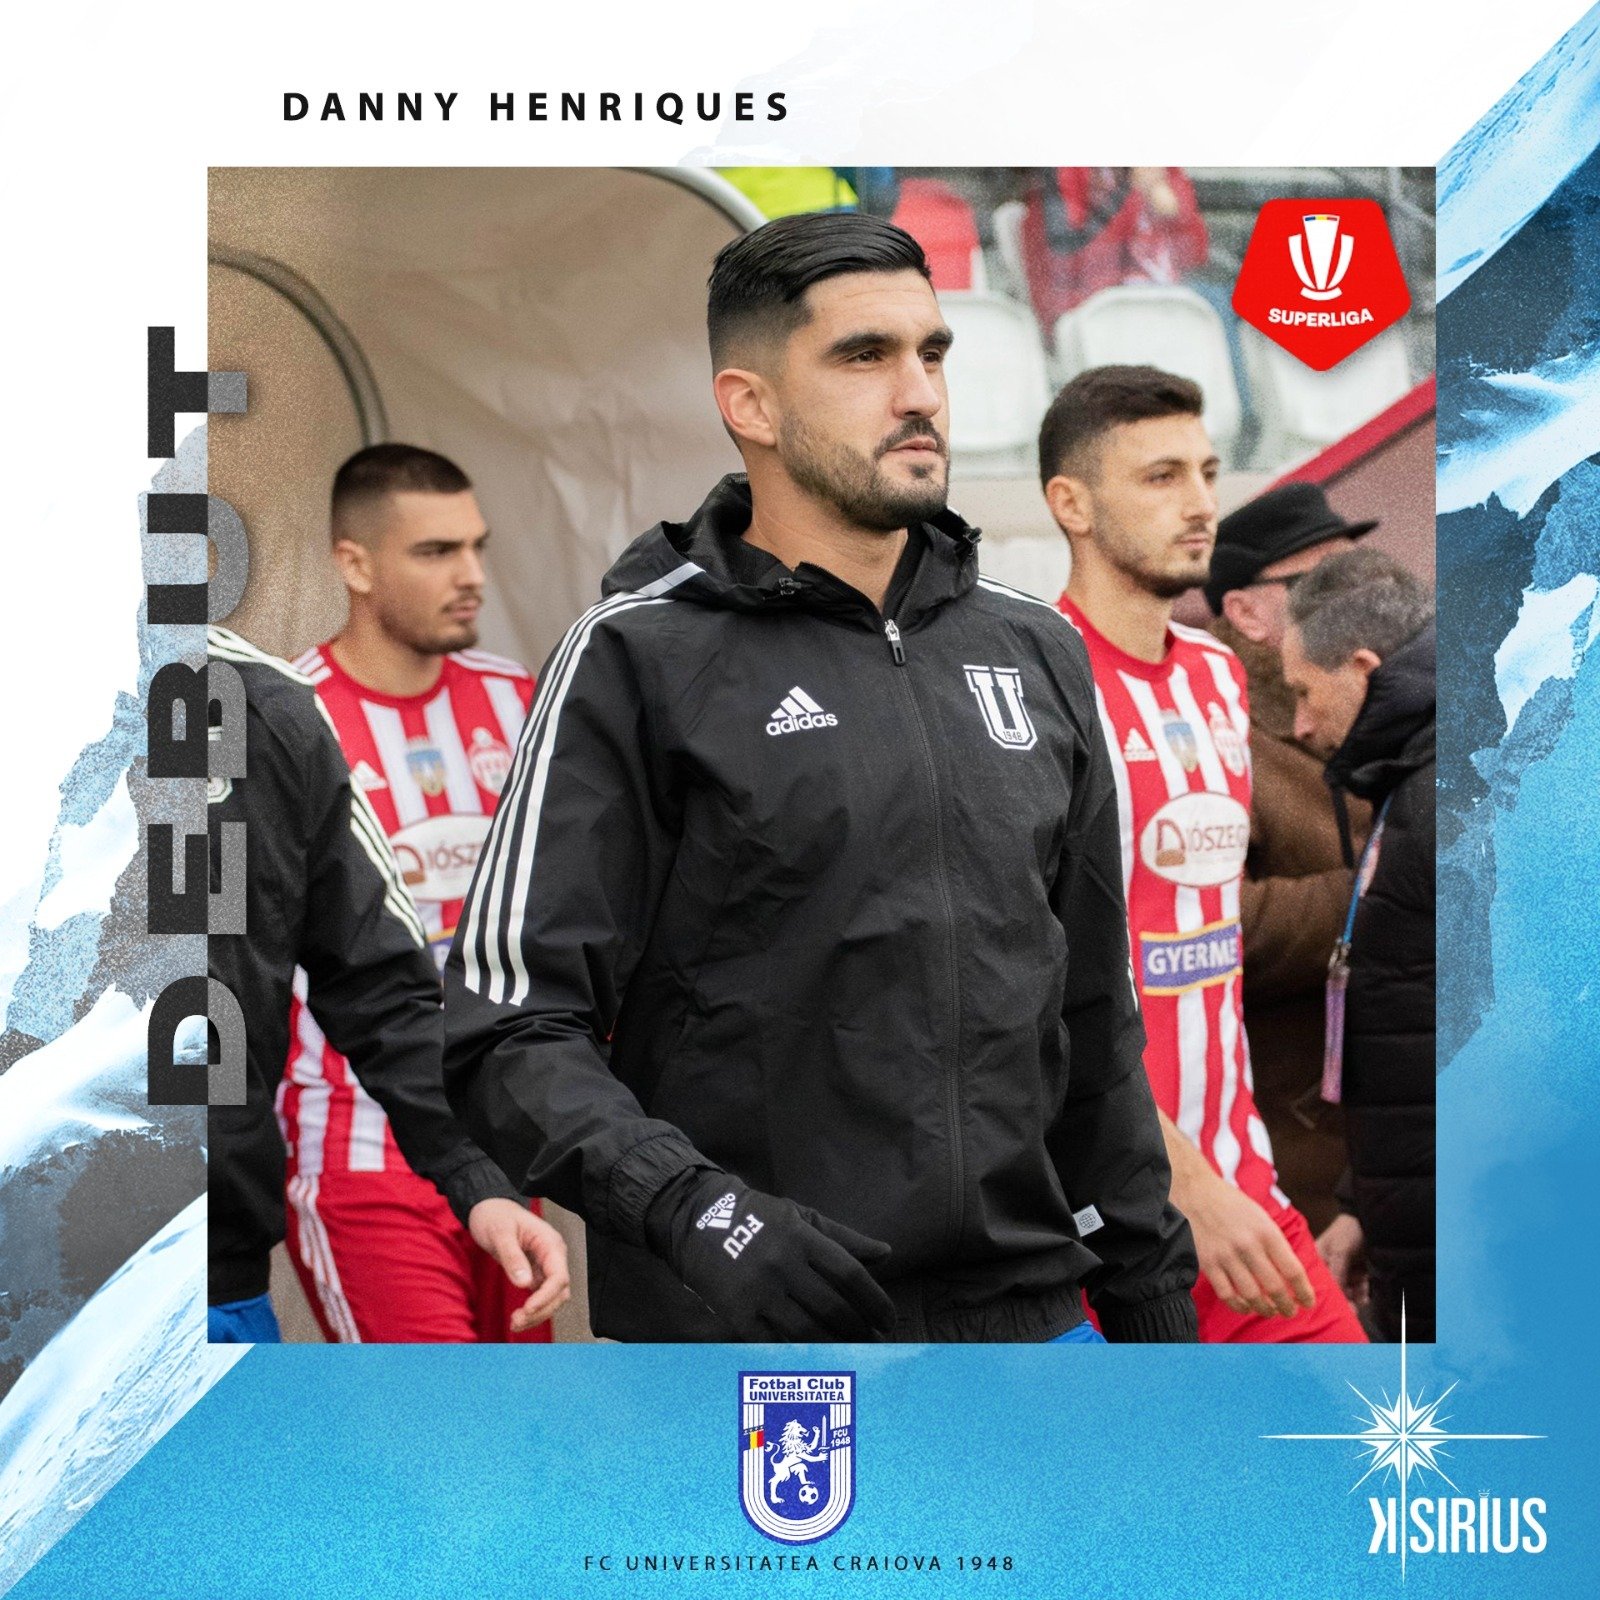 Debut: Danny Henriques (FC Universitatea Craiova 1948)